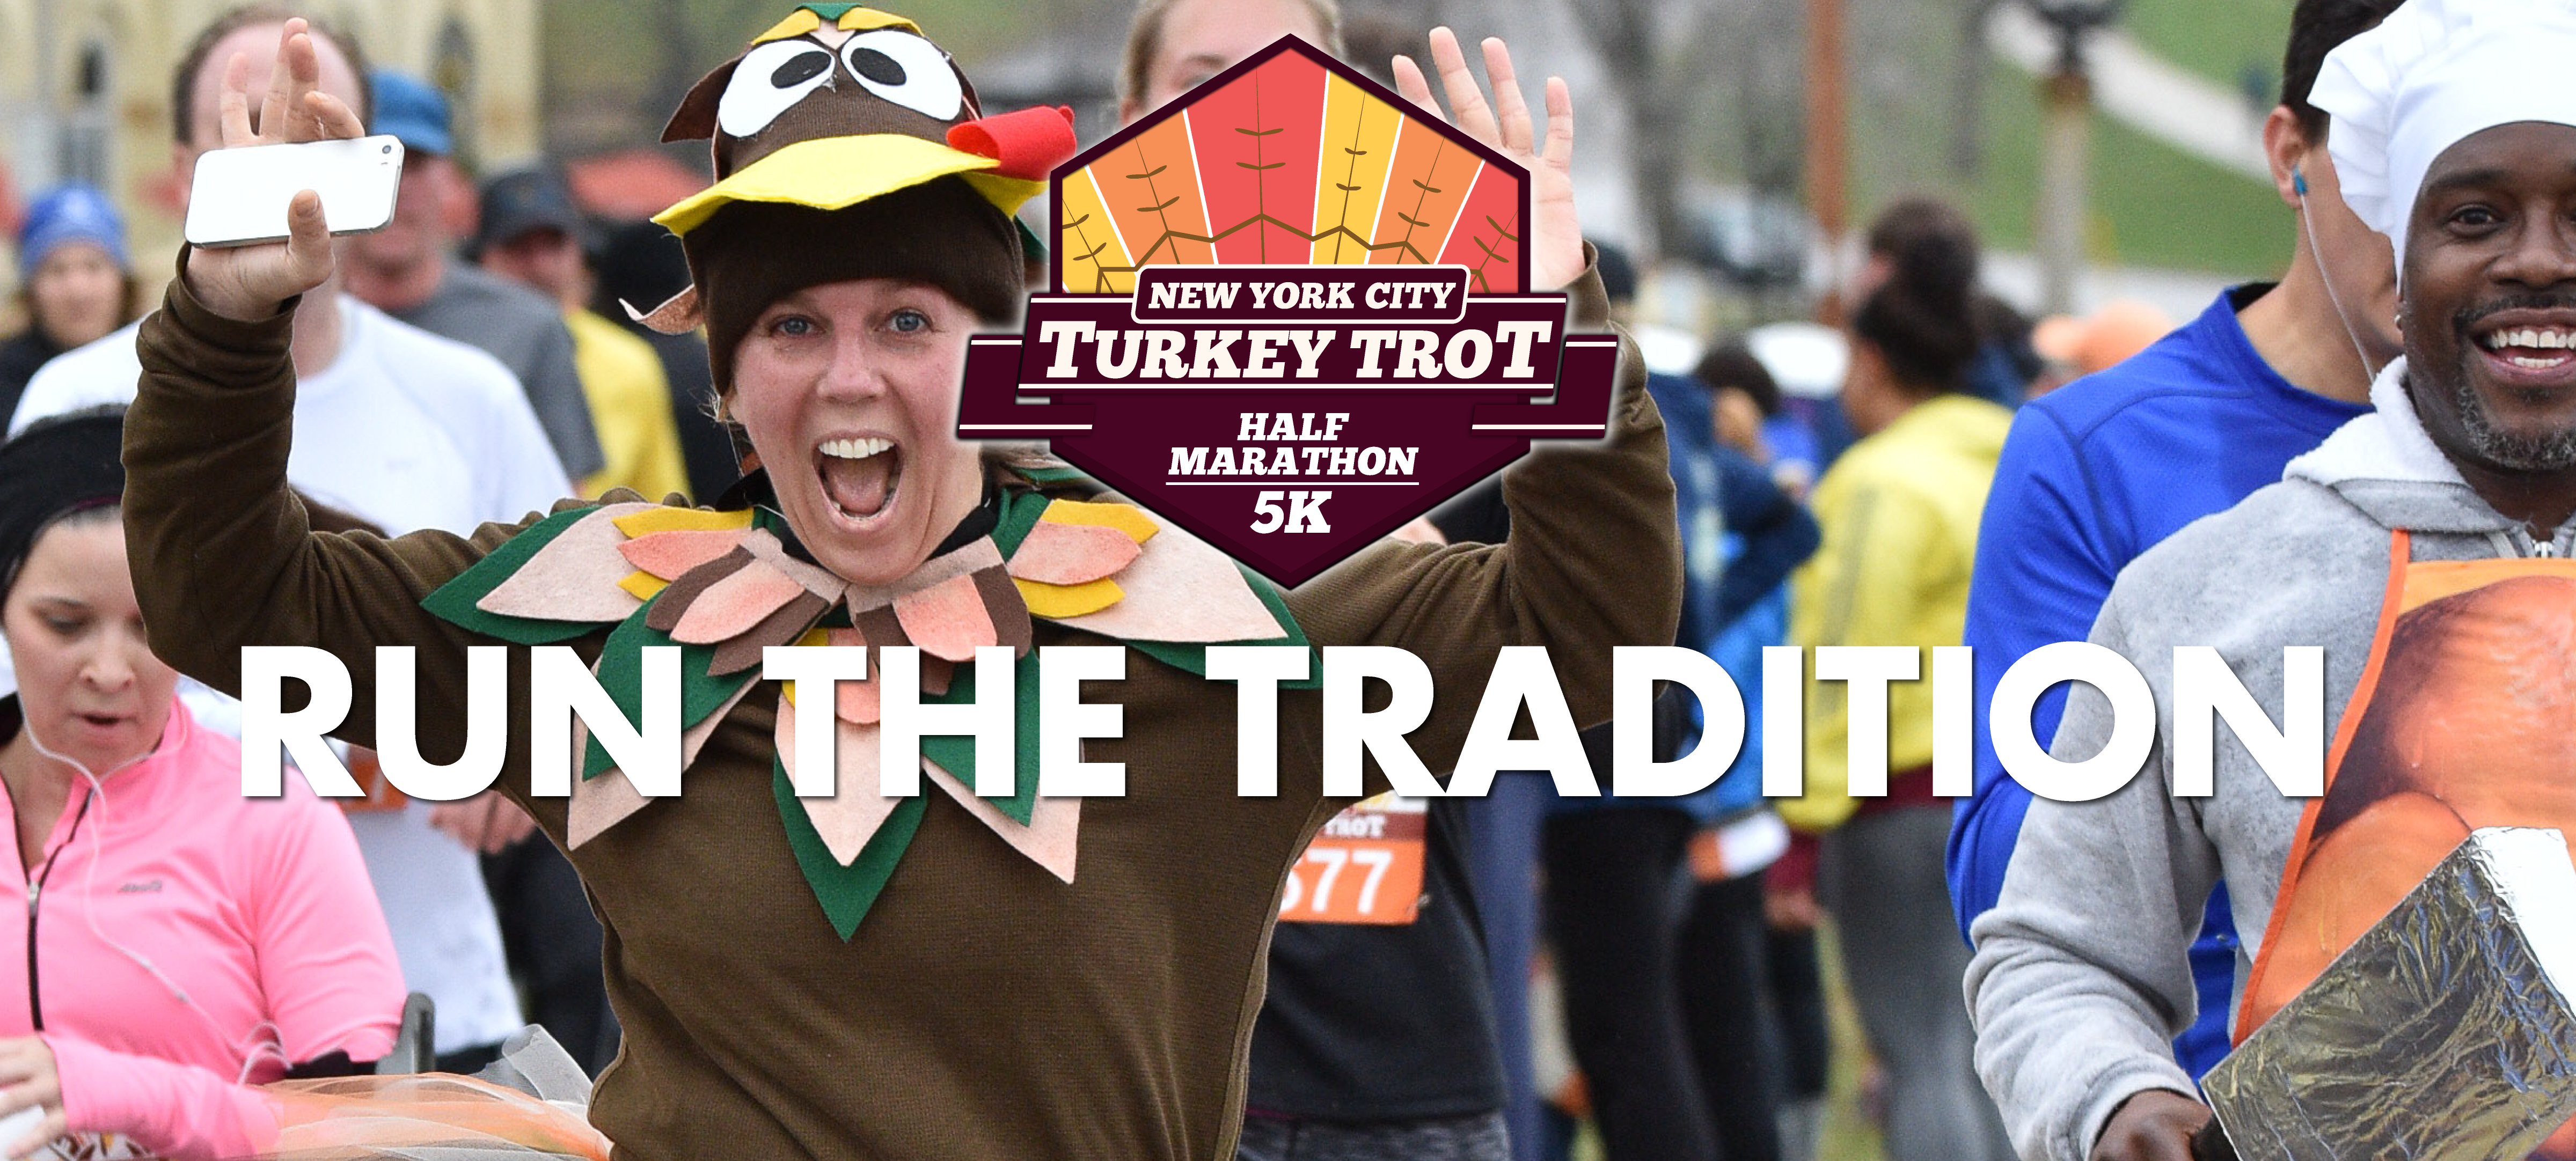 NYC Turkey Trot